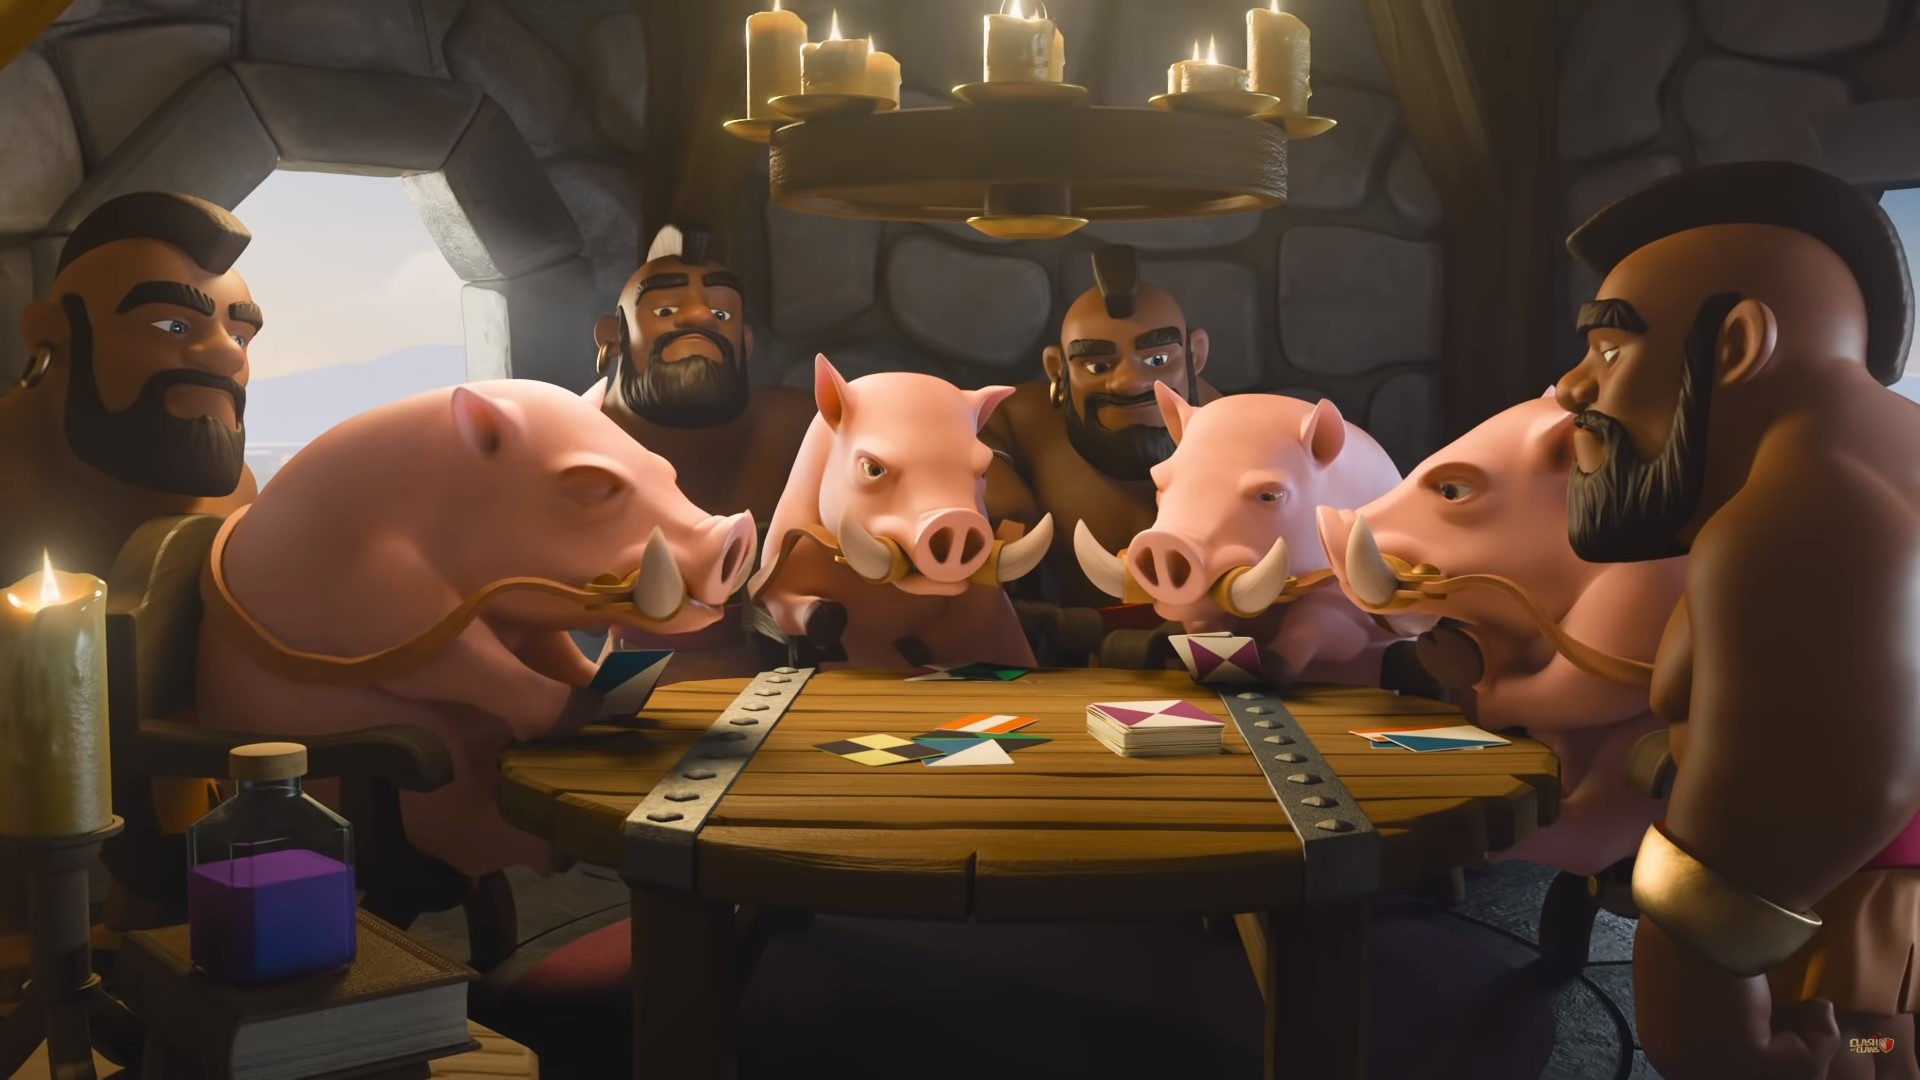 Beste mobiele strategiespellen: Clash of Clans. Afbeelding toont een stel mensen en varkens die rond een tafel zitten